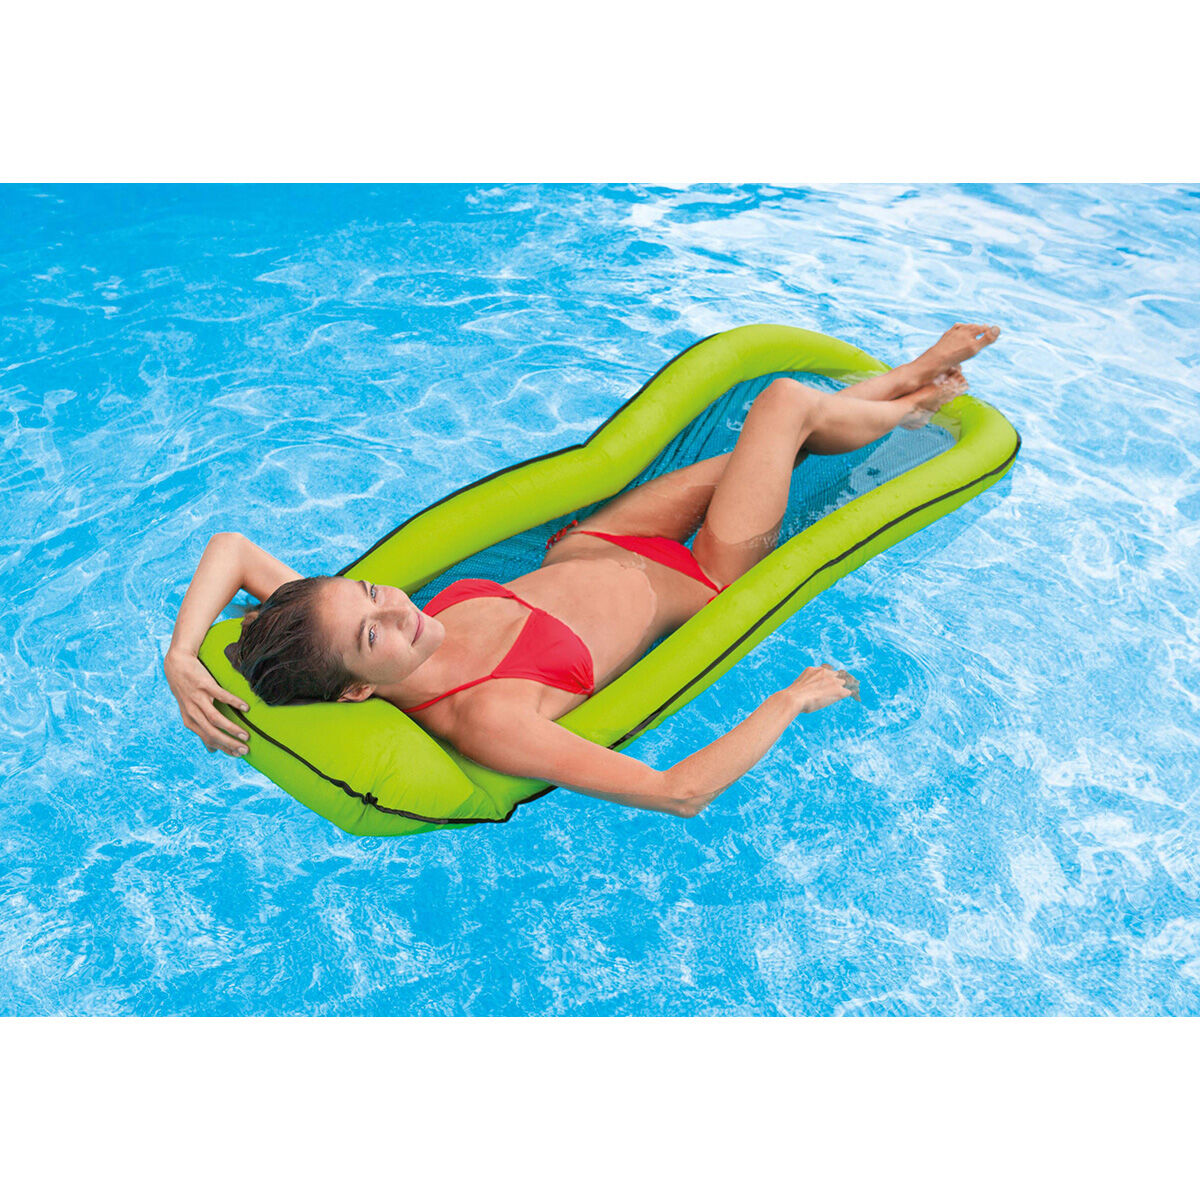 4x Schwimmschwimmstuhl Nudelnetz Adult Kids Pool Wasser Float Bed Ring Mesh 